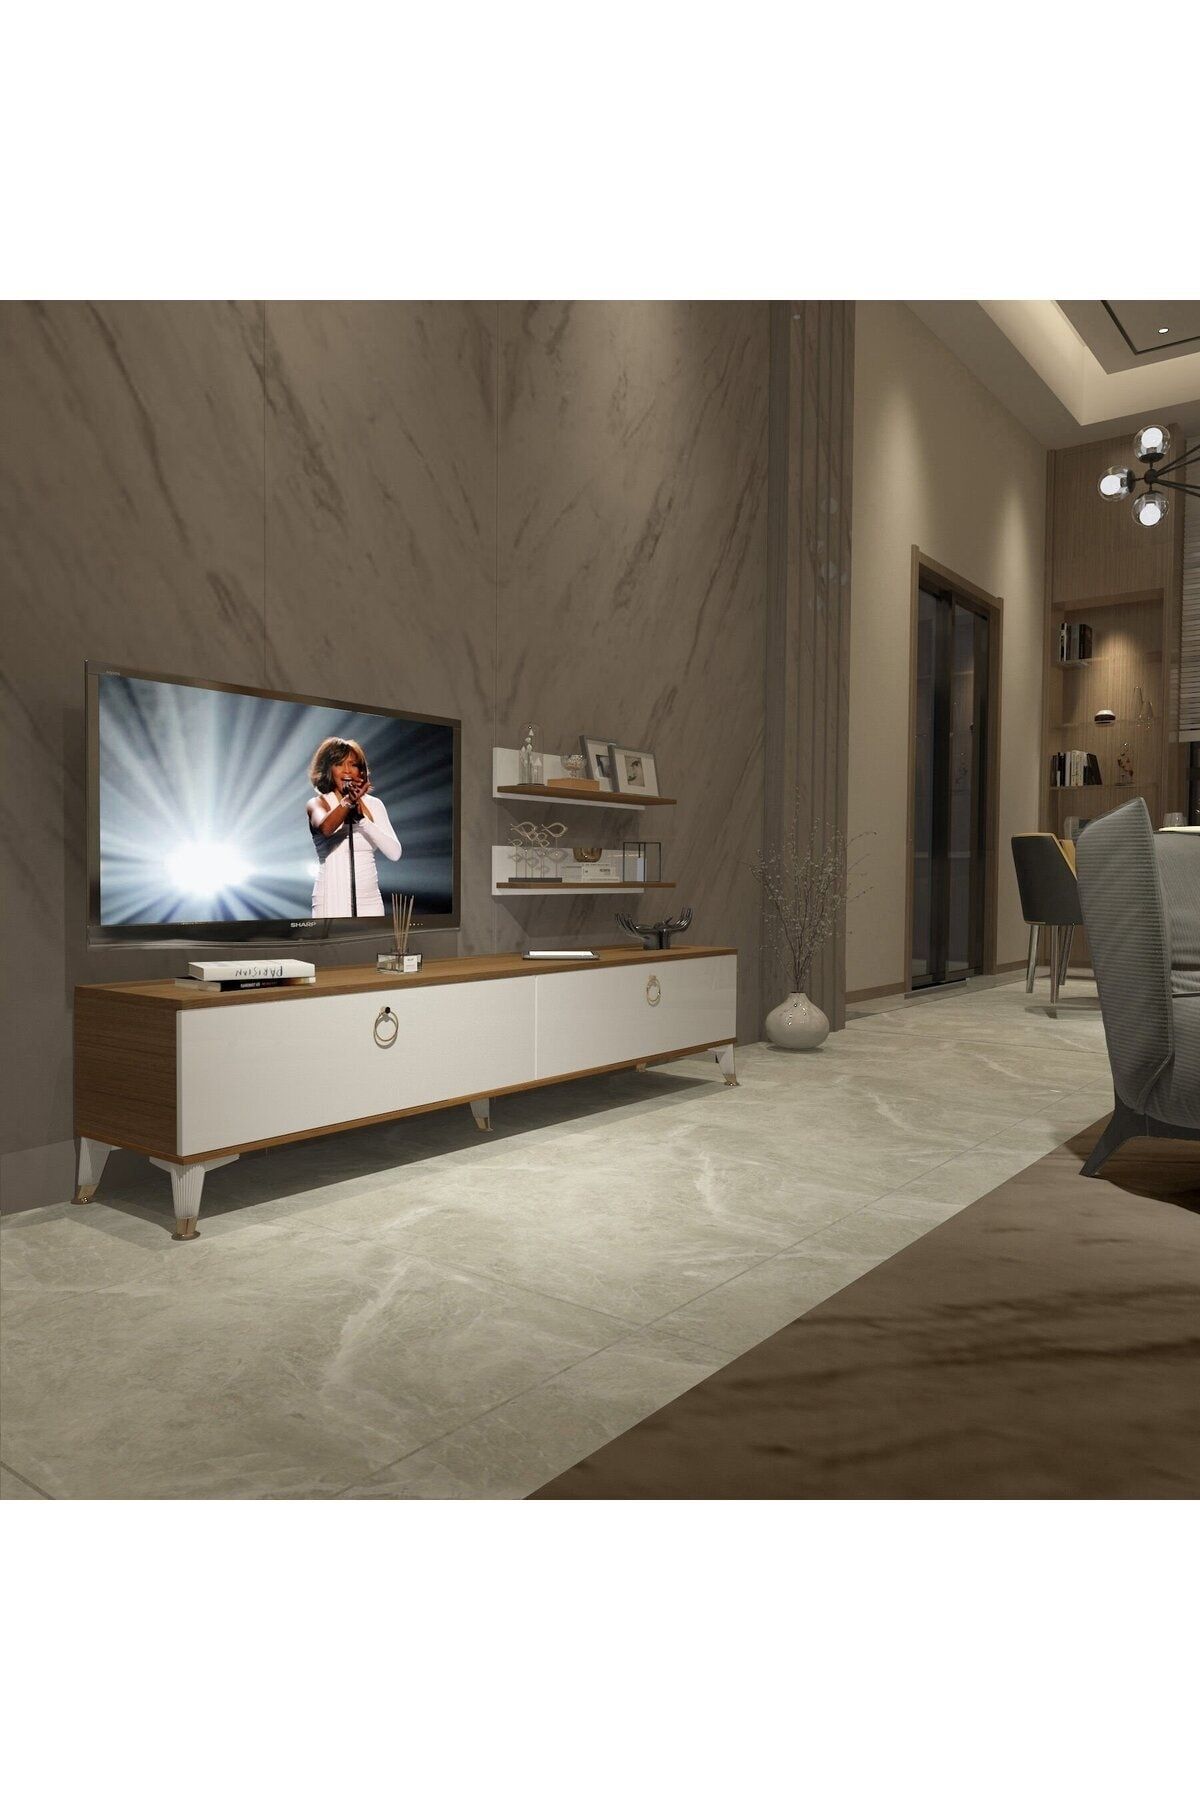 Decoraktiv Eko 4 Mdf Std Gold Tv Ünitesi Tv Sehpası - Ceviz - Beyaz